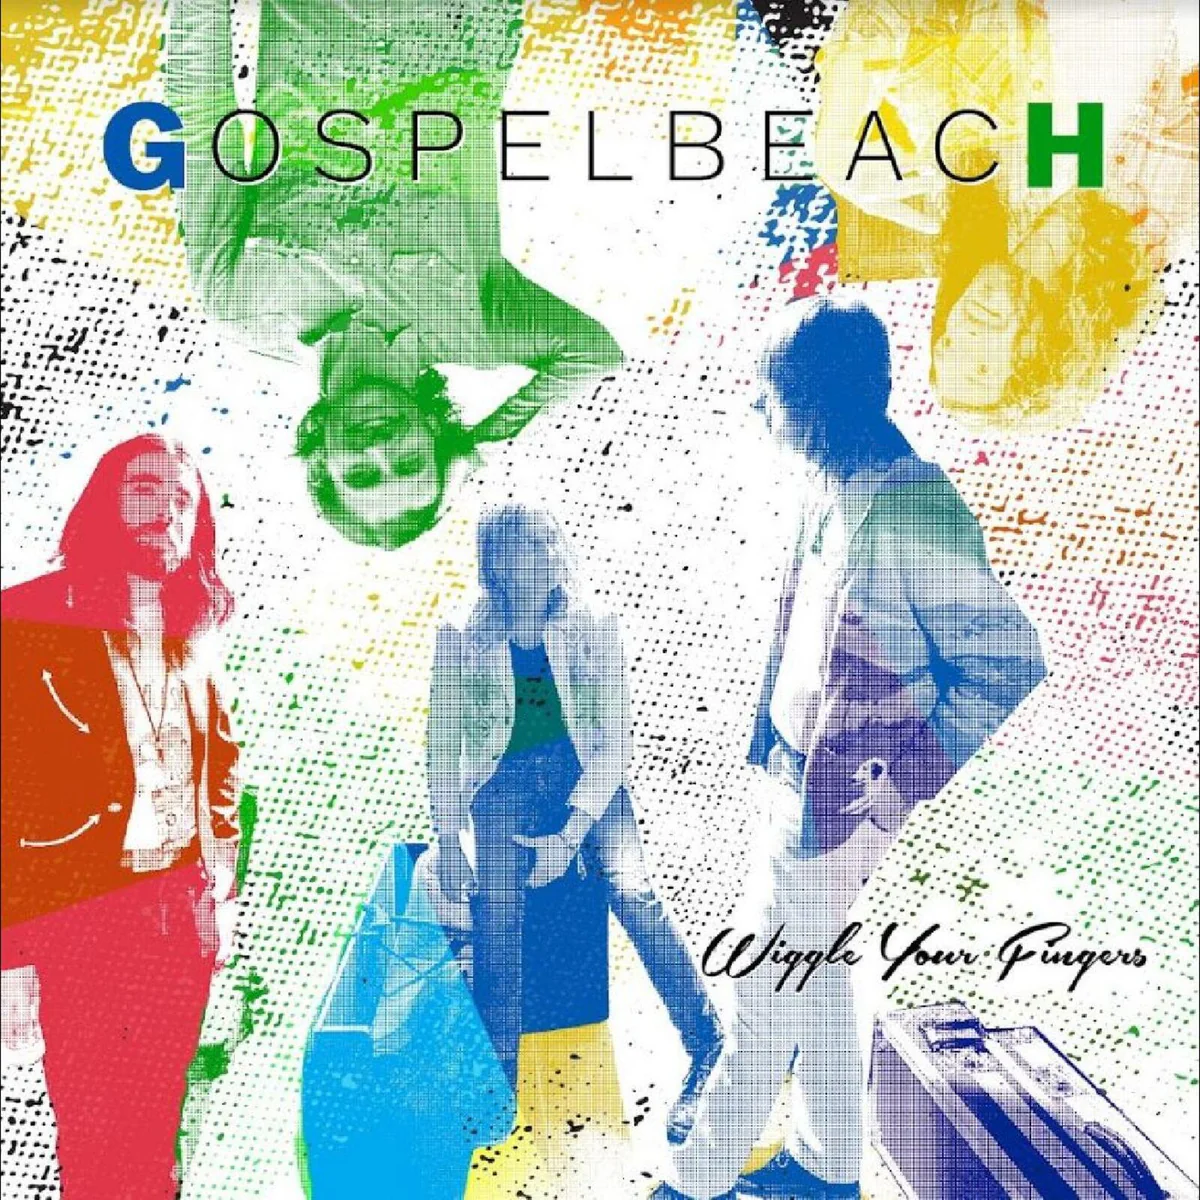 GospelbeacH “Wiggle Your Fingers”. Il Disco della Settimana.